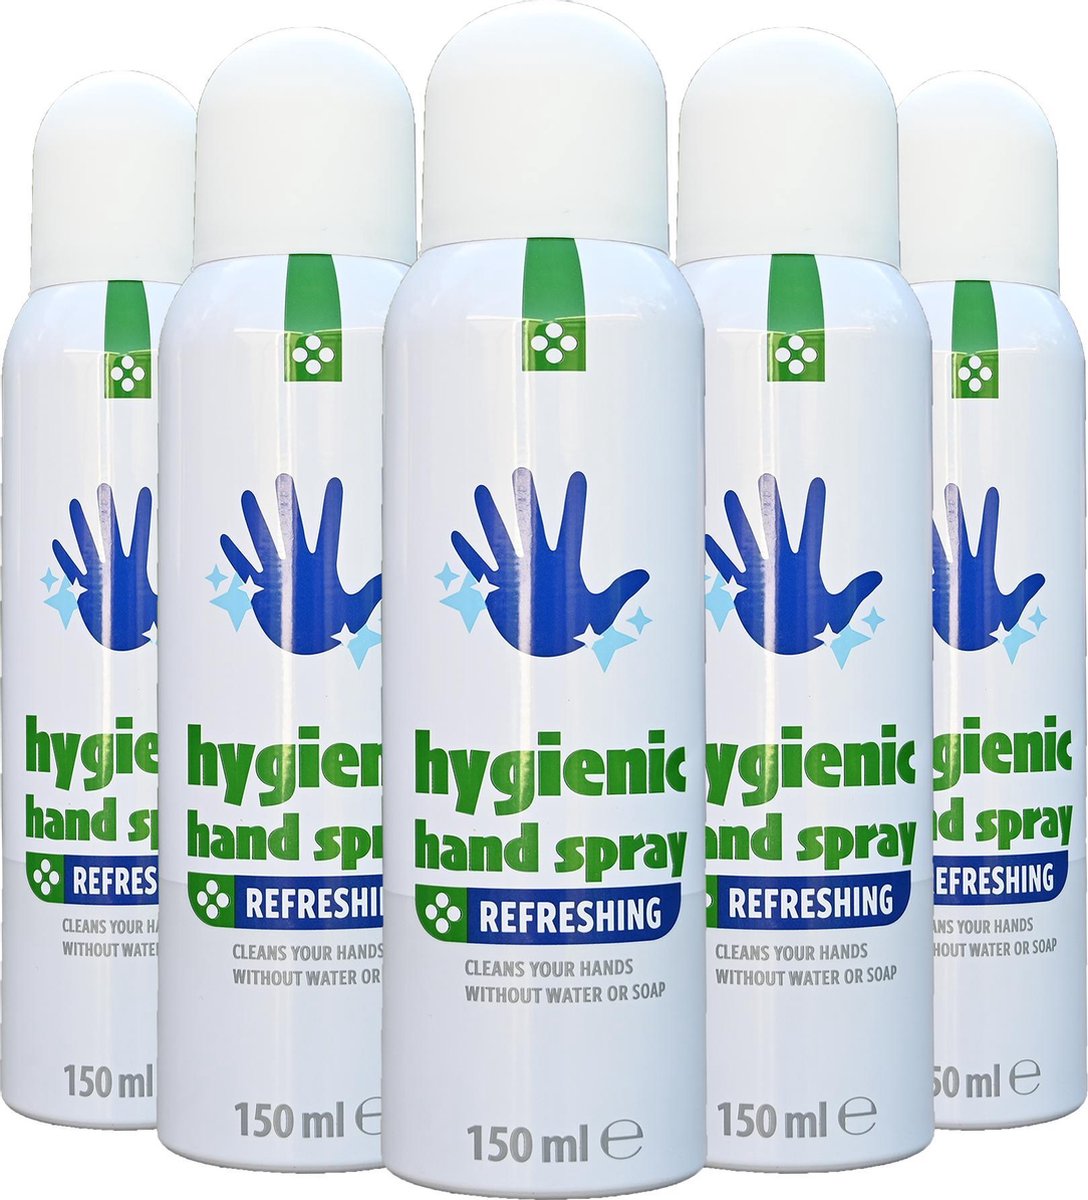 5 x Hygiënische handspray - Schone handen zonder water en zeep - handen spray